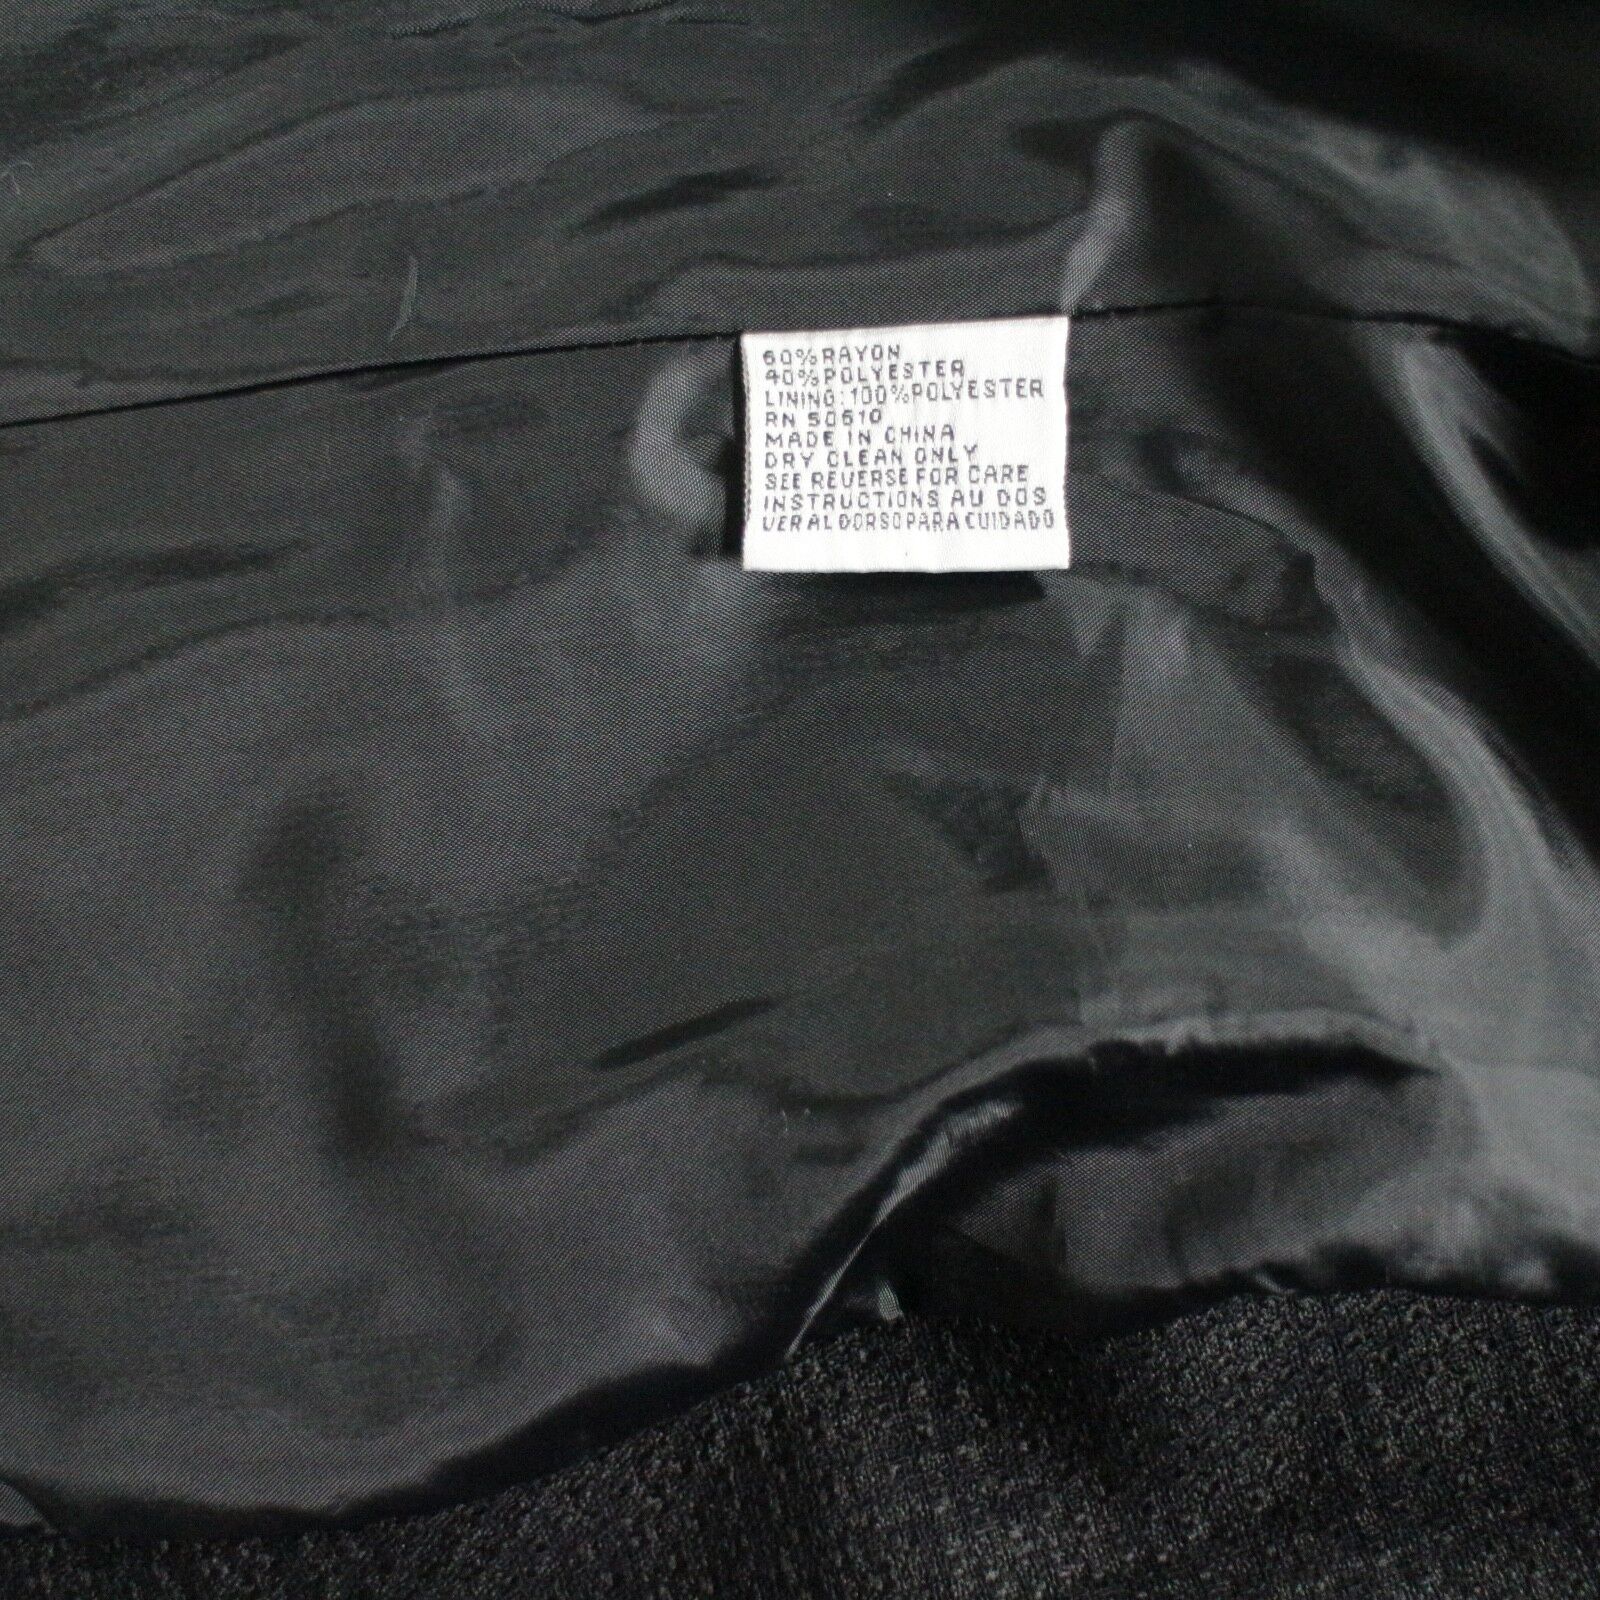 LE SUIT PETIT women’s CAREER blazer, 14P, black, textured weave fabric ...